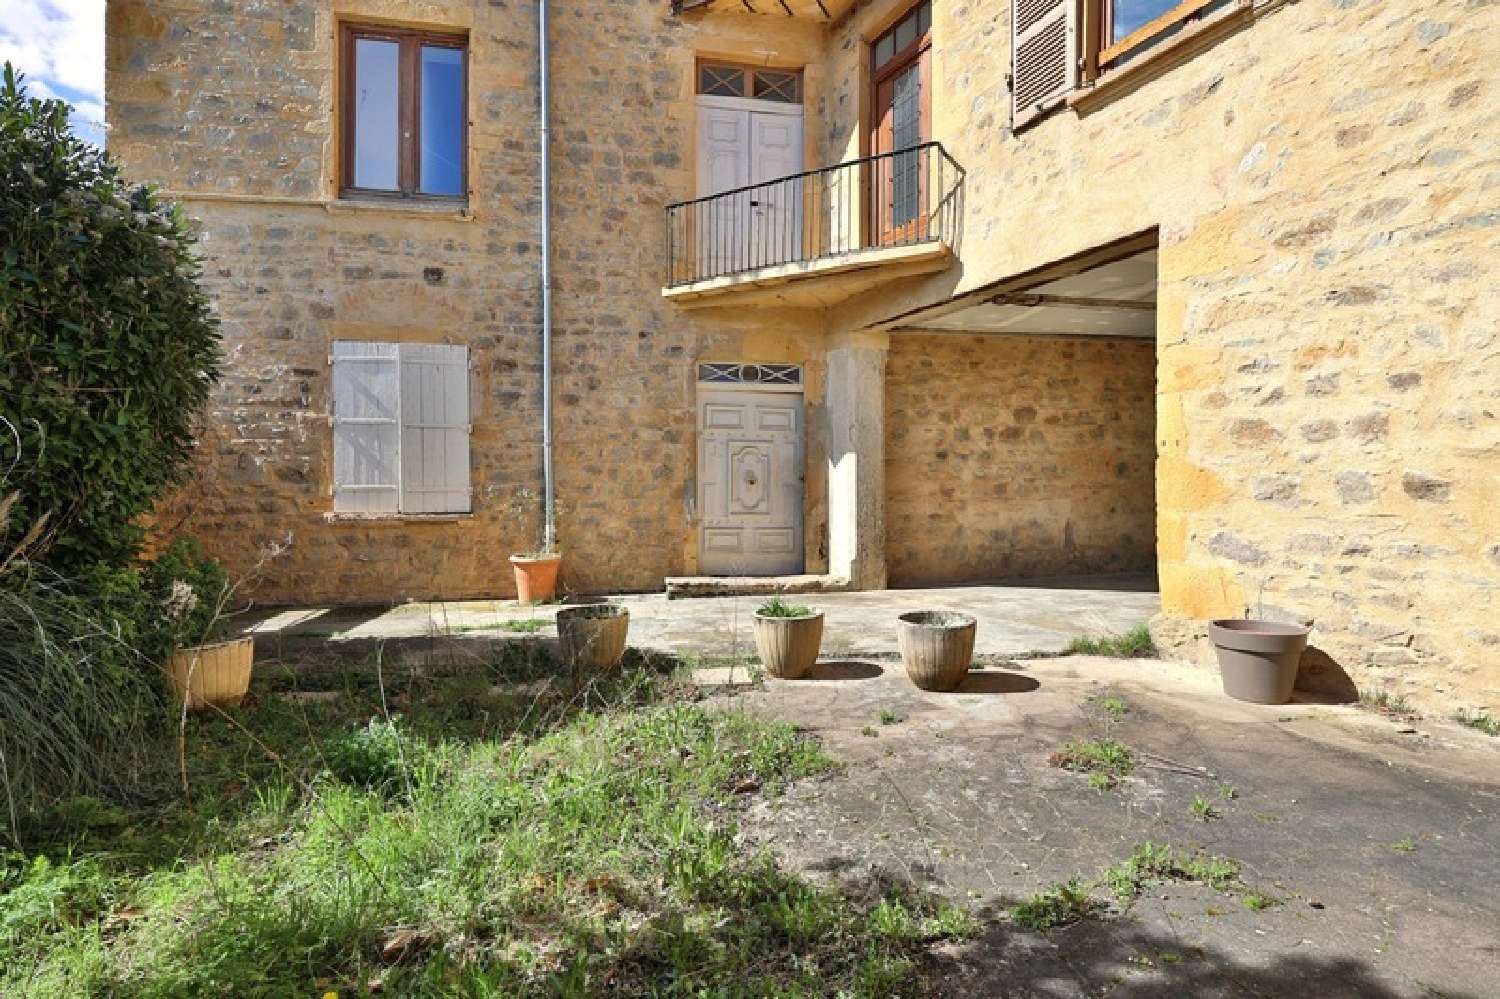  for sale apartment Pontcharra-sur-Turdine Rhône 6